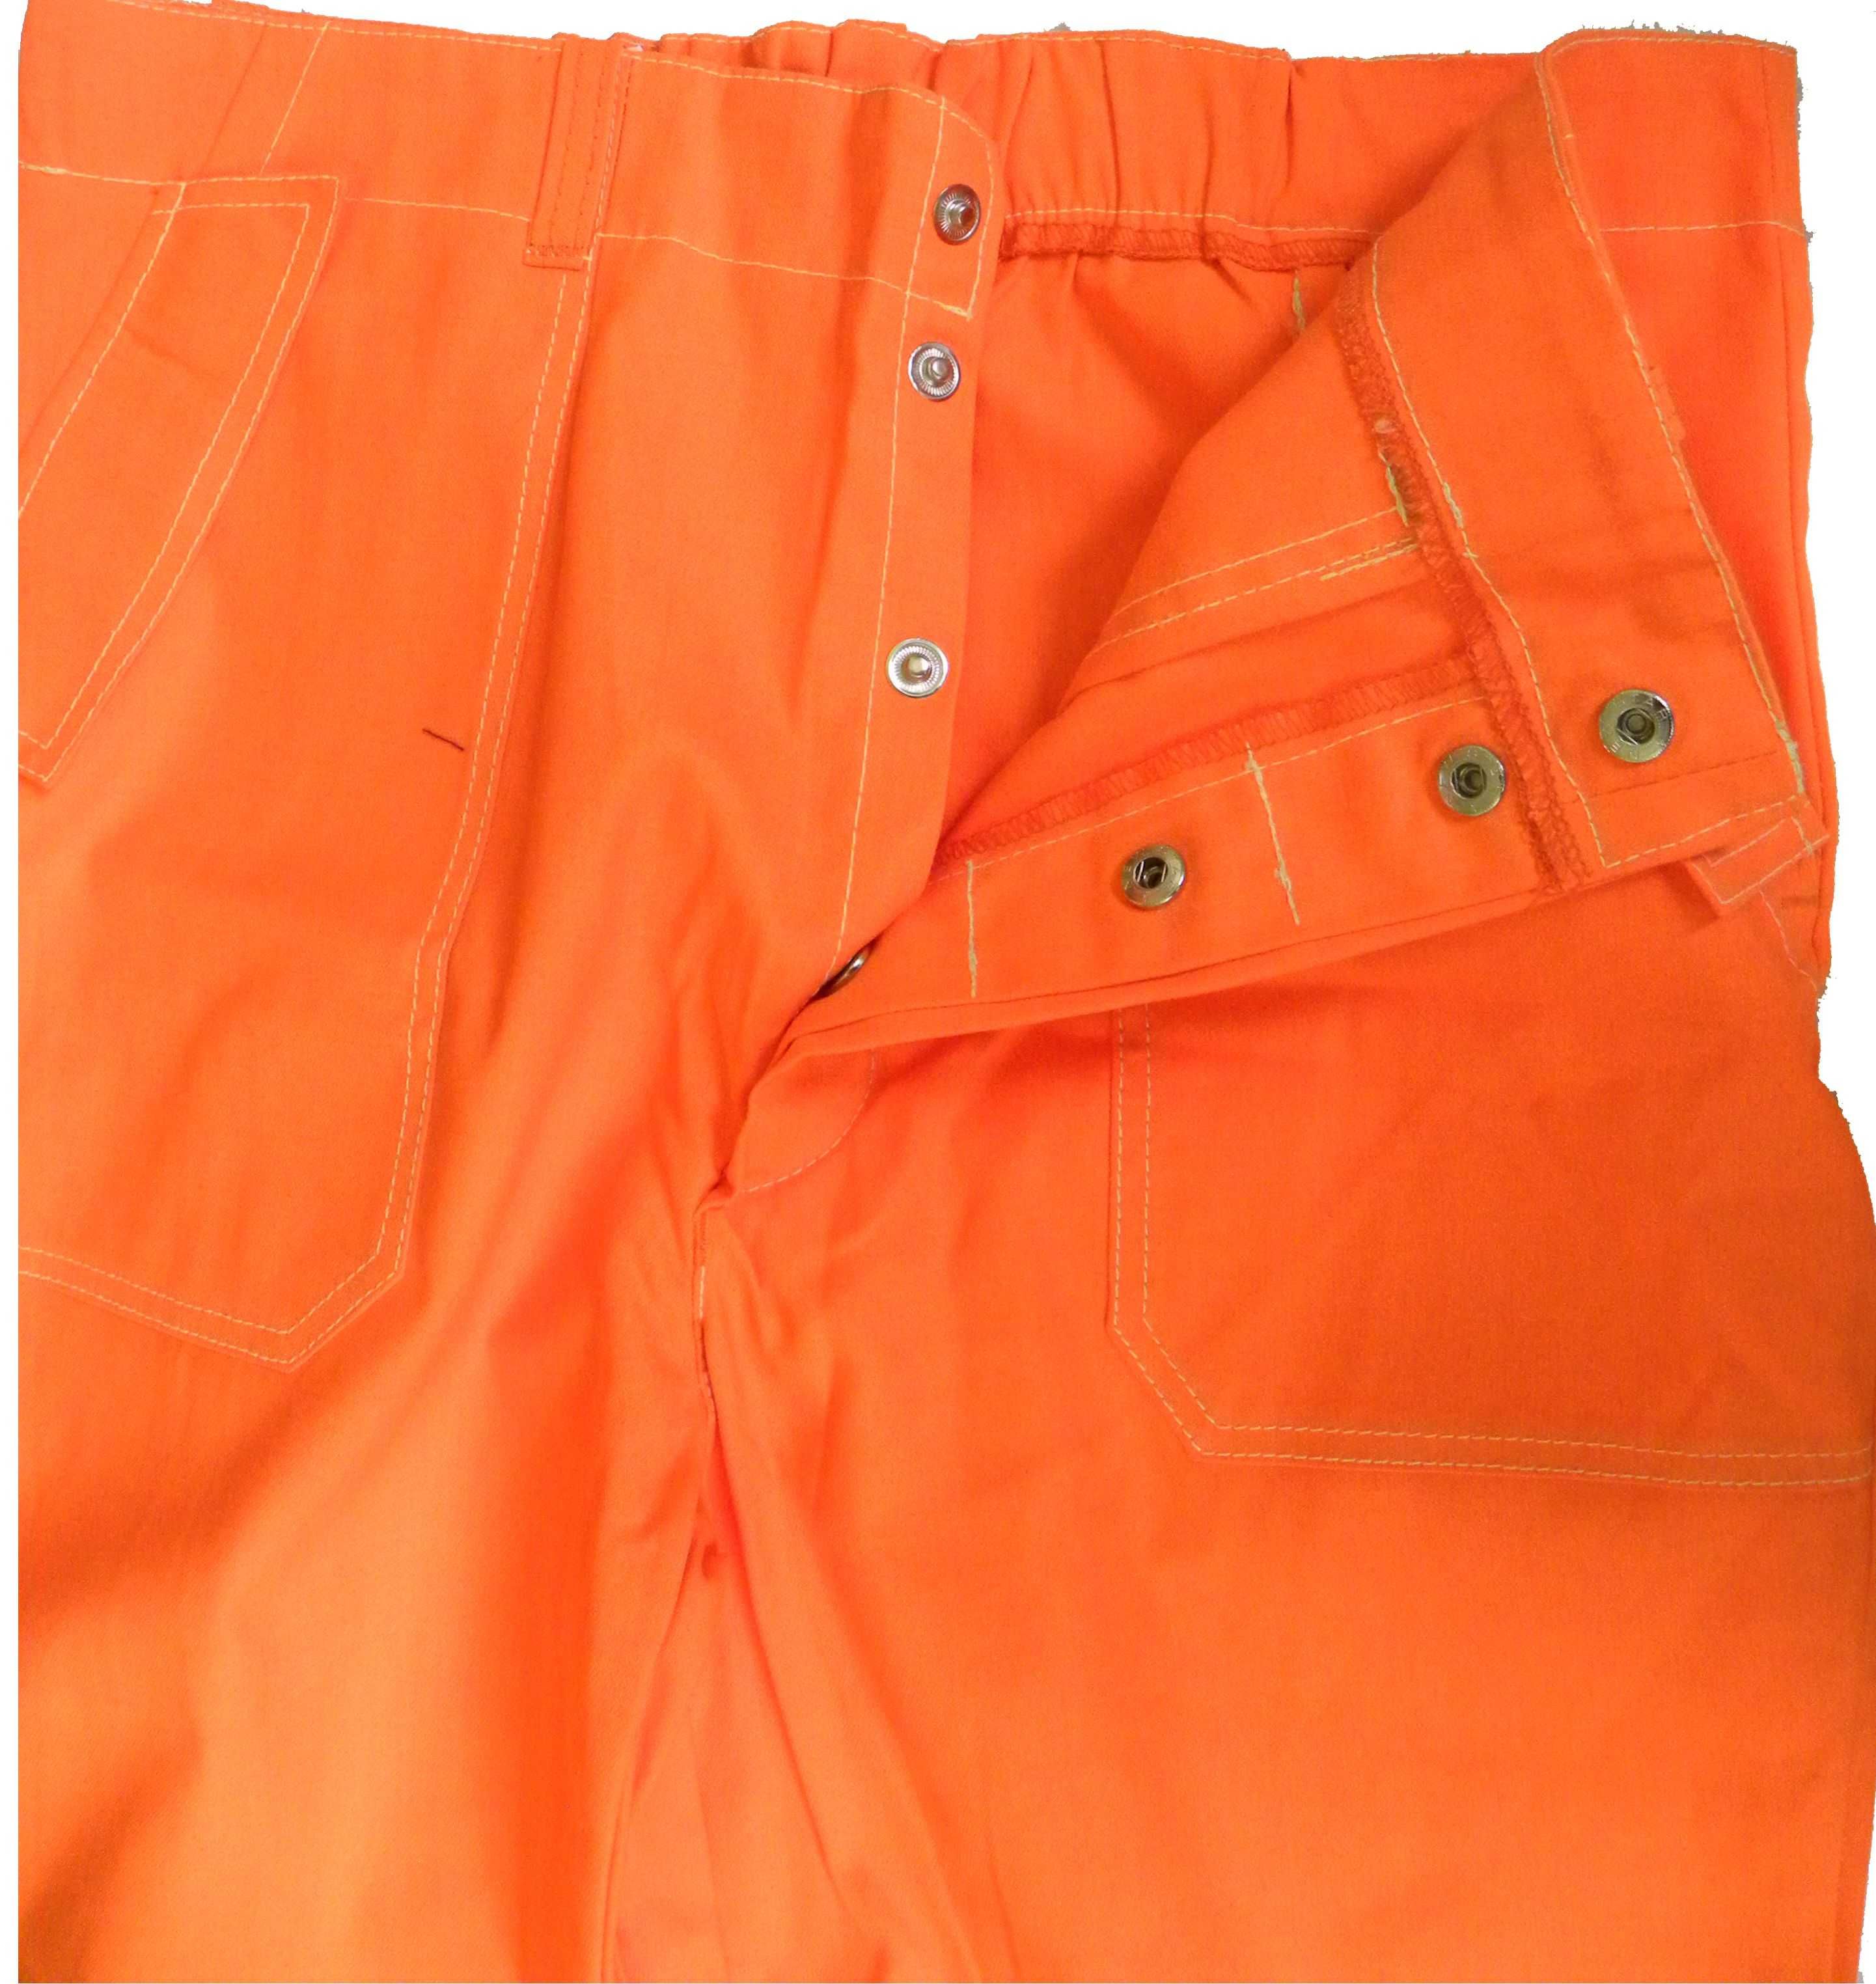 ubranie spawacza pomarańczowe z odblaskami r.176/112